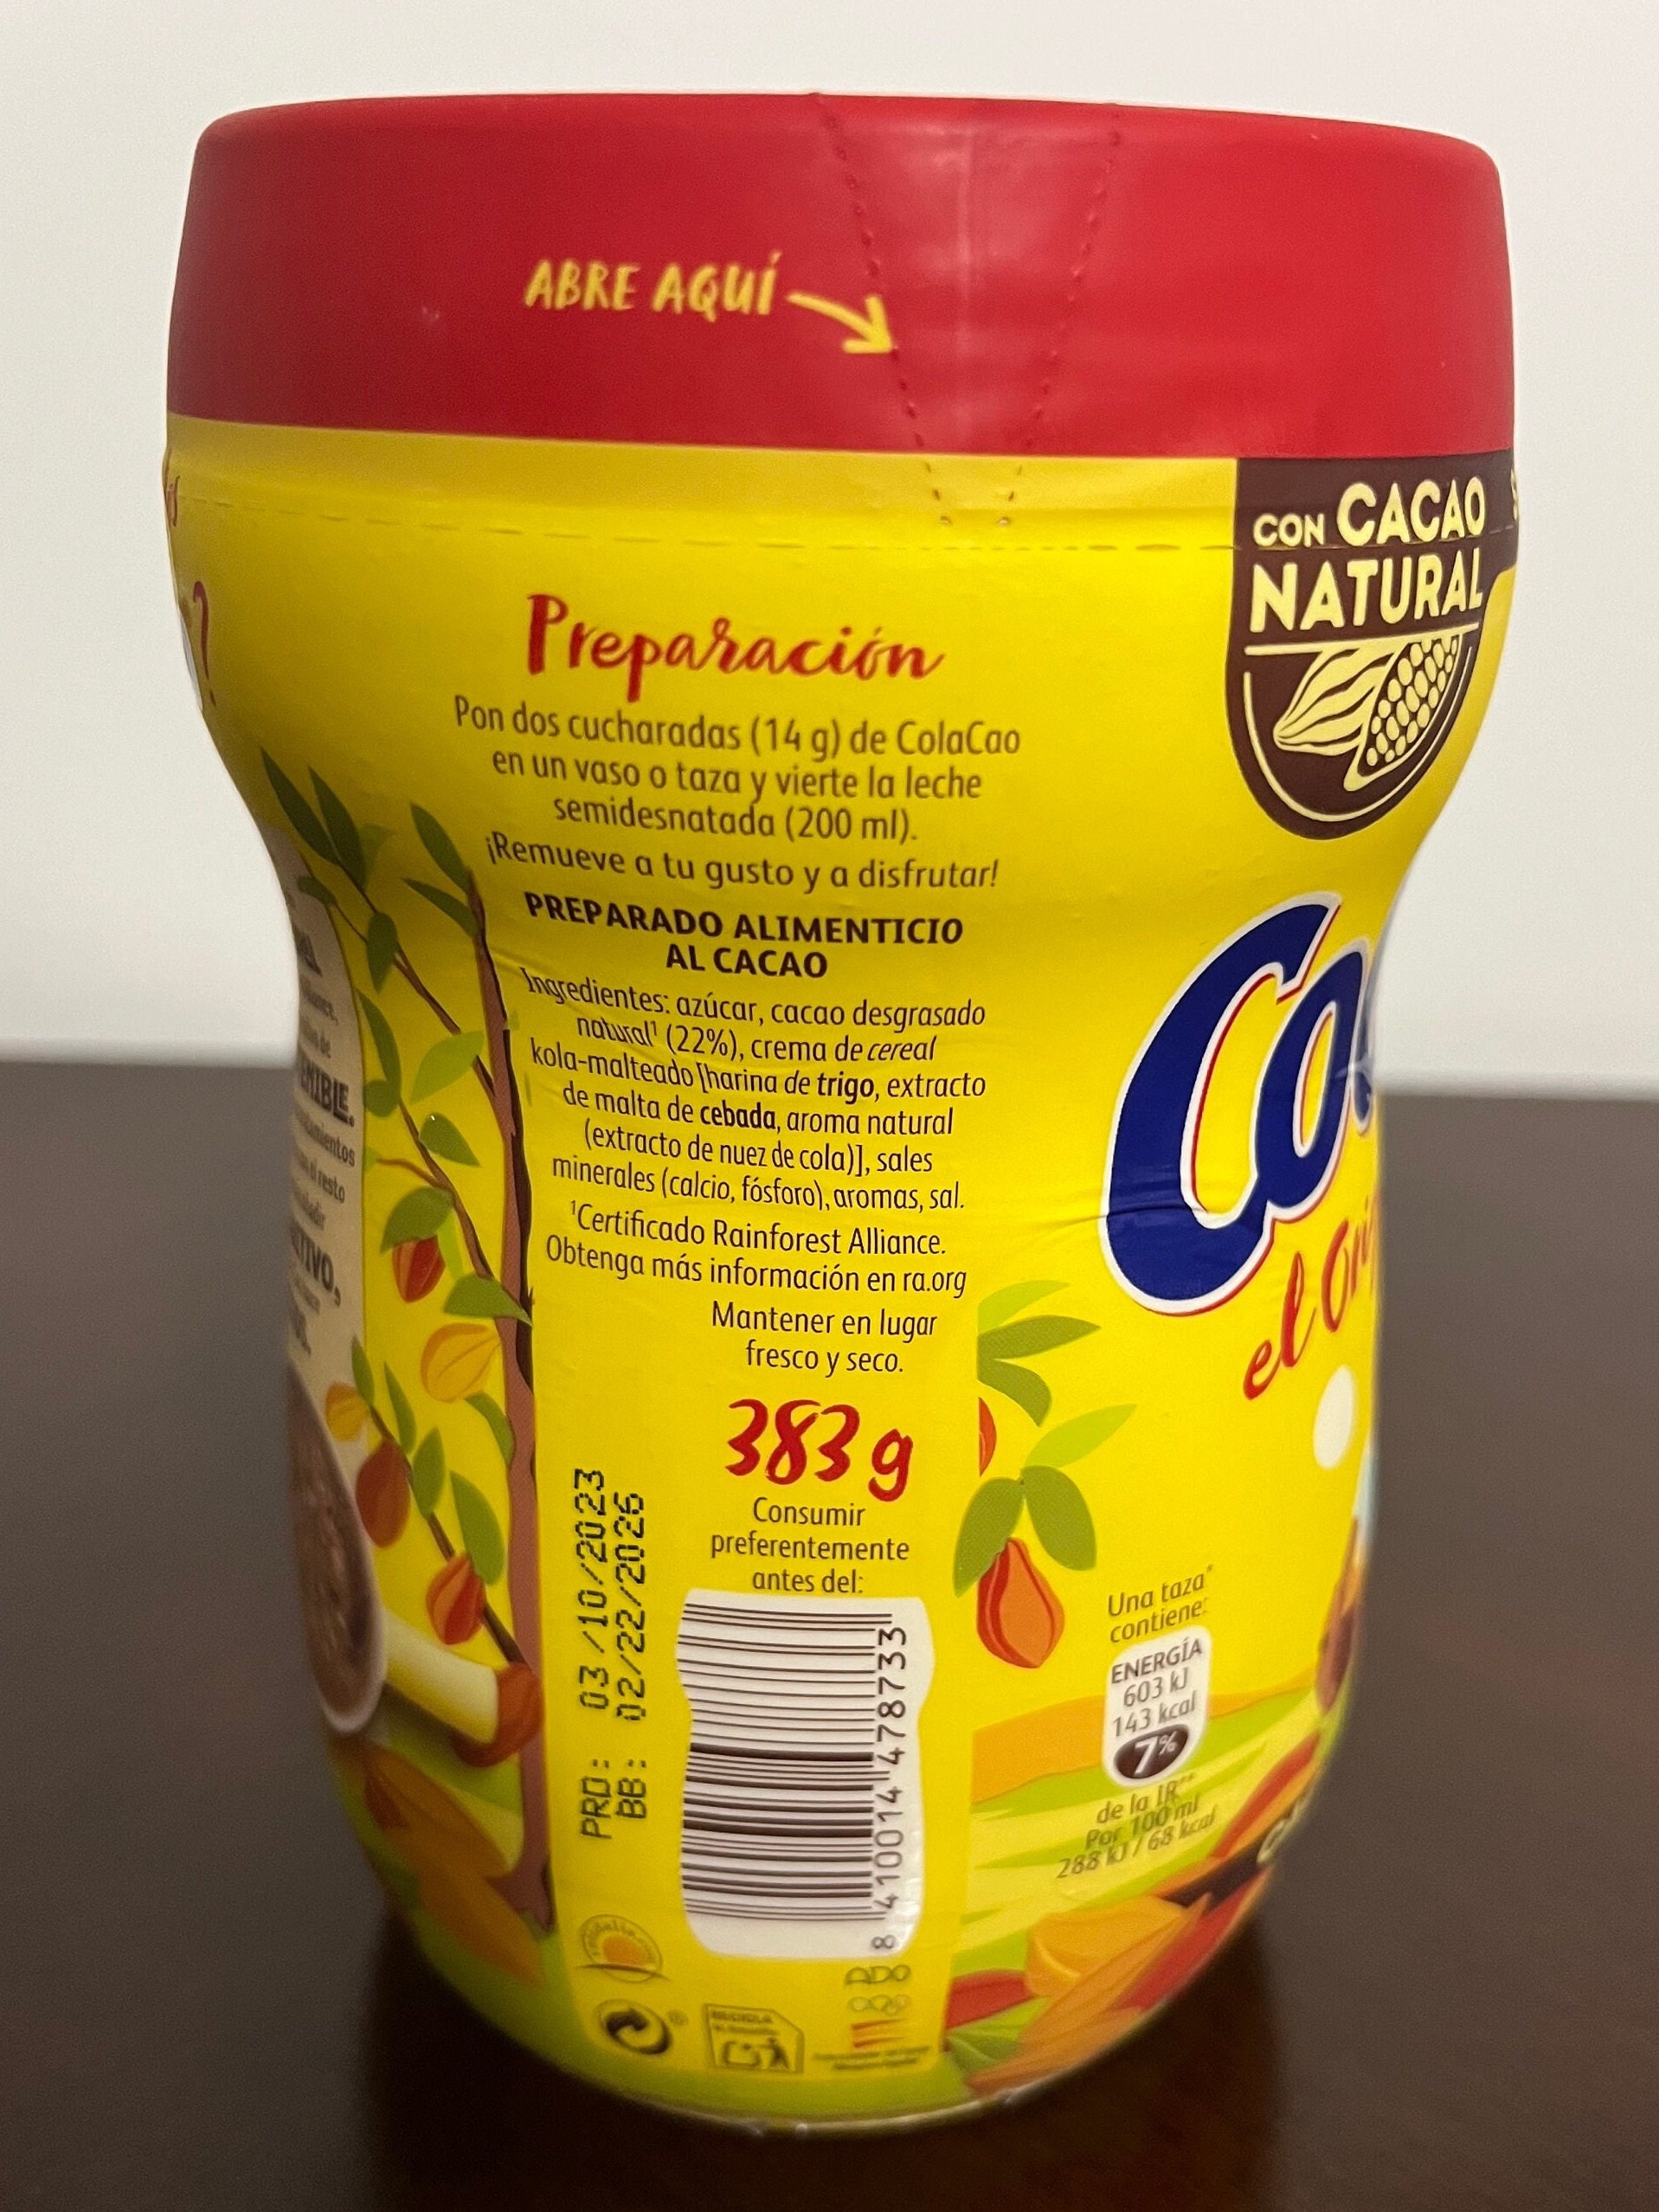 Cola Cao El Original - 383 g